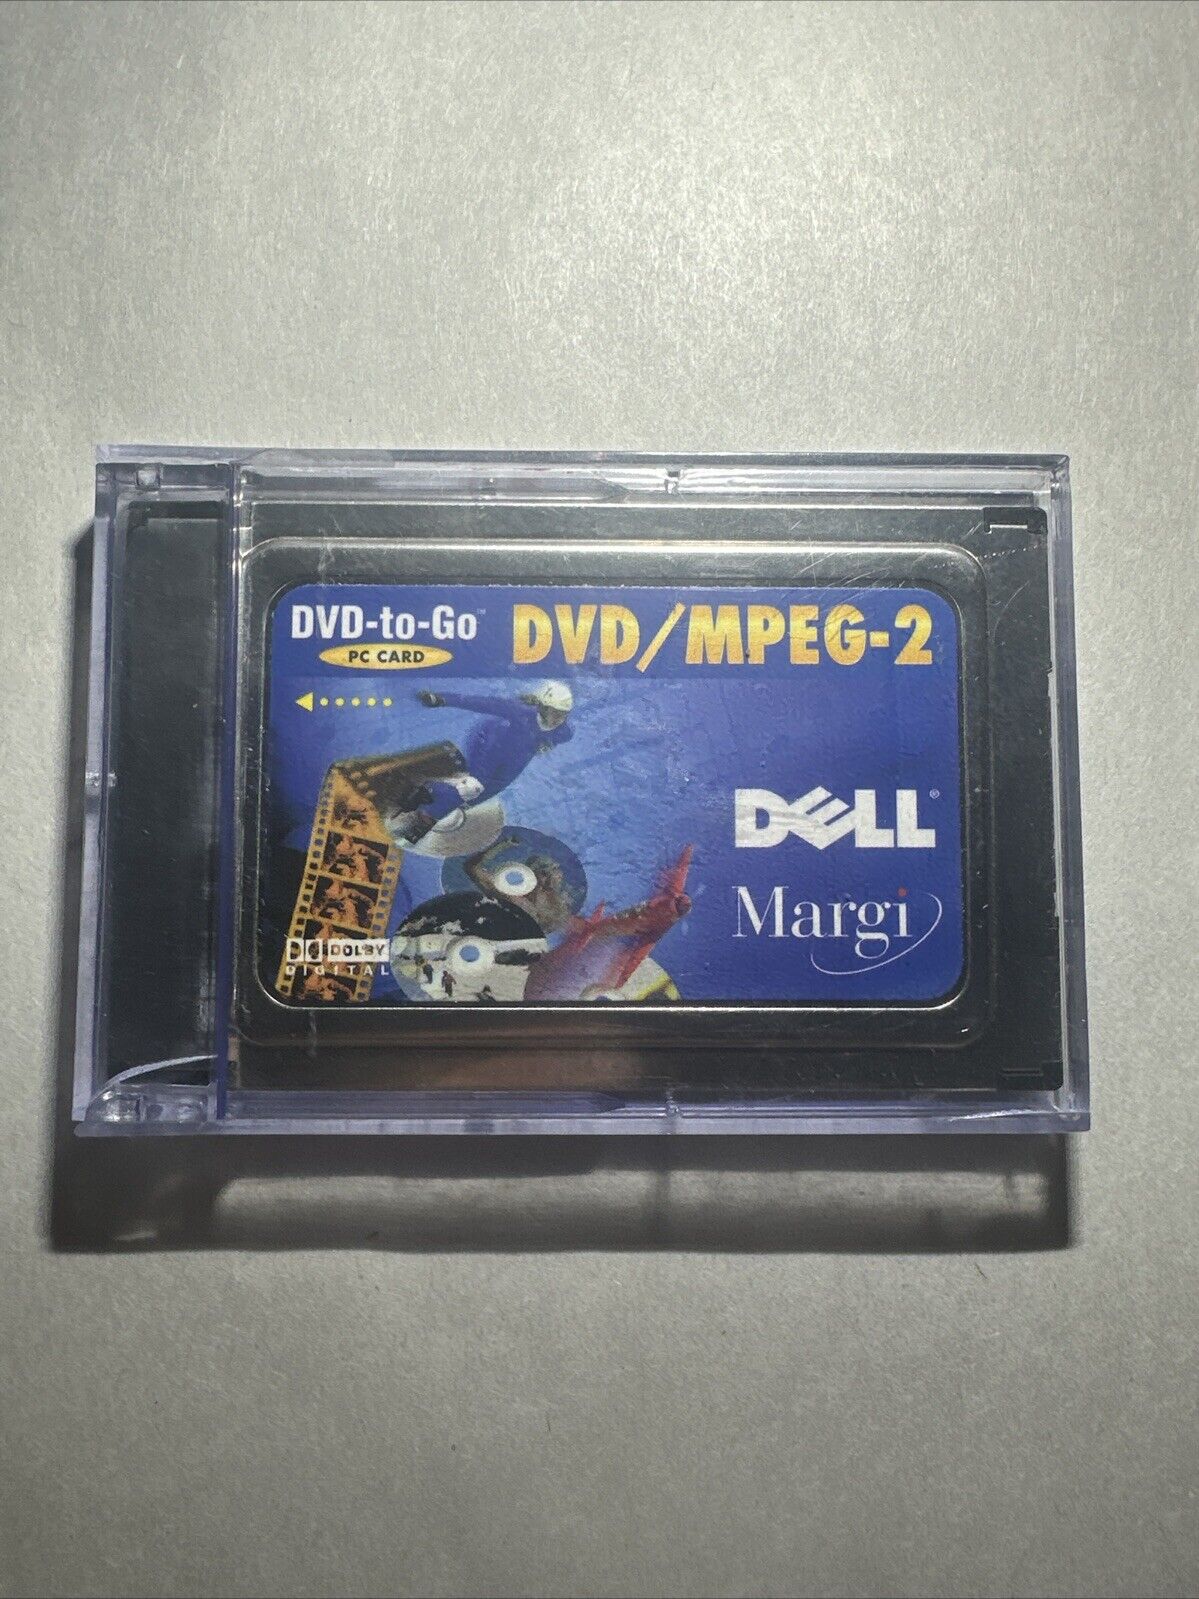 Dell Margi DVD-to-Go PCMCIA DVD / MPEG-2 PC Card And Plastic Case